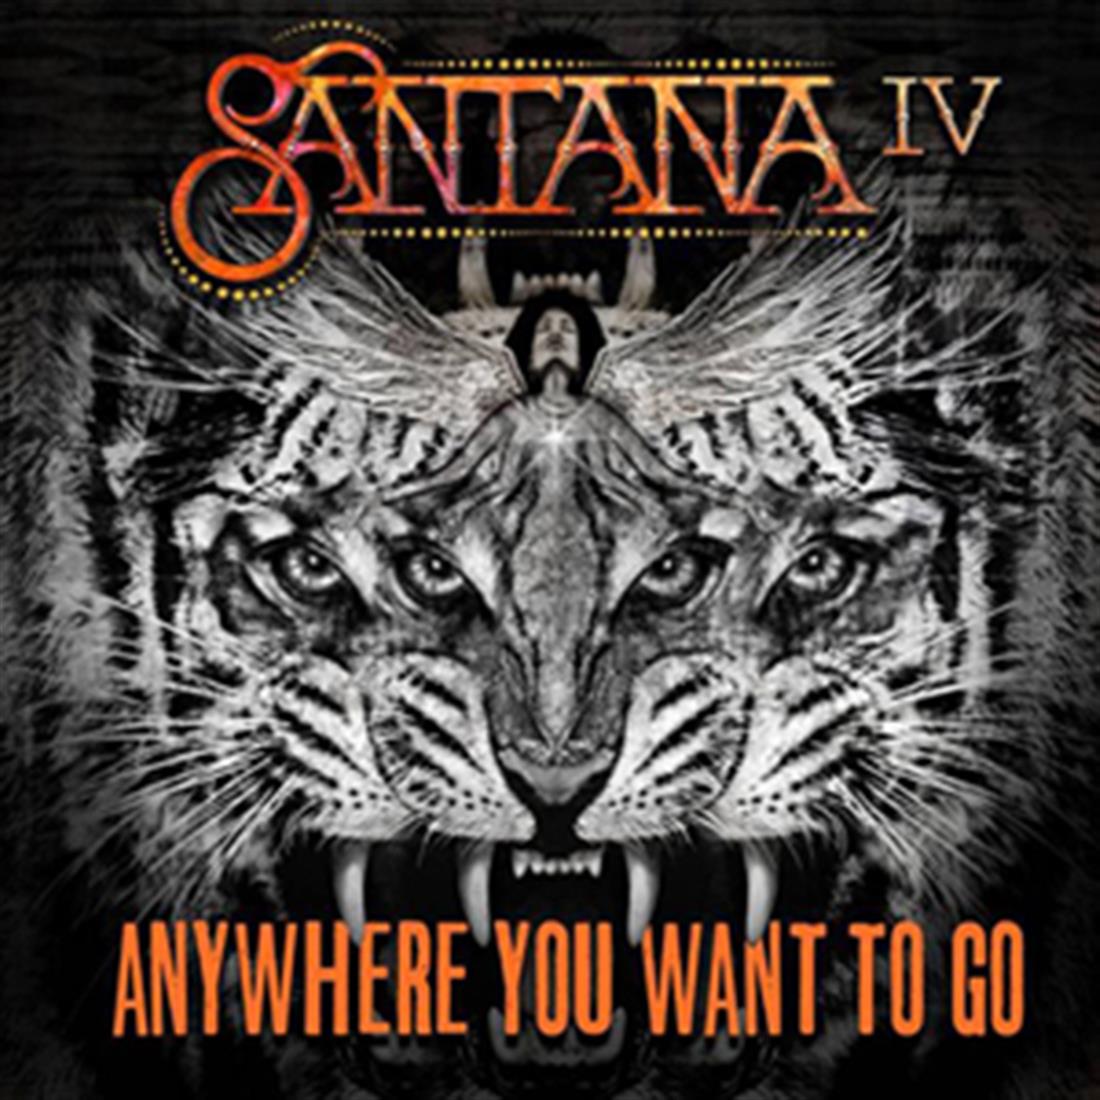 Κάρλος Σαντάνα - άλμπουμ - νέο - Santana IV - μουσική